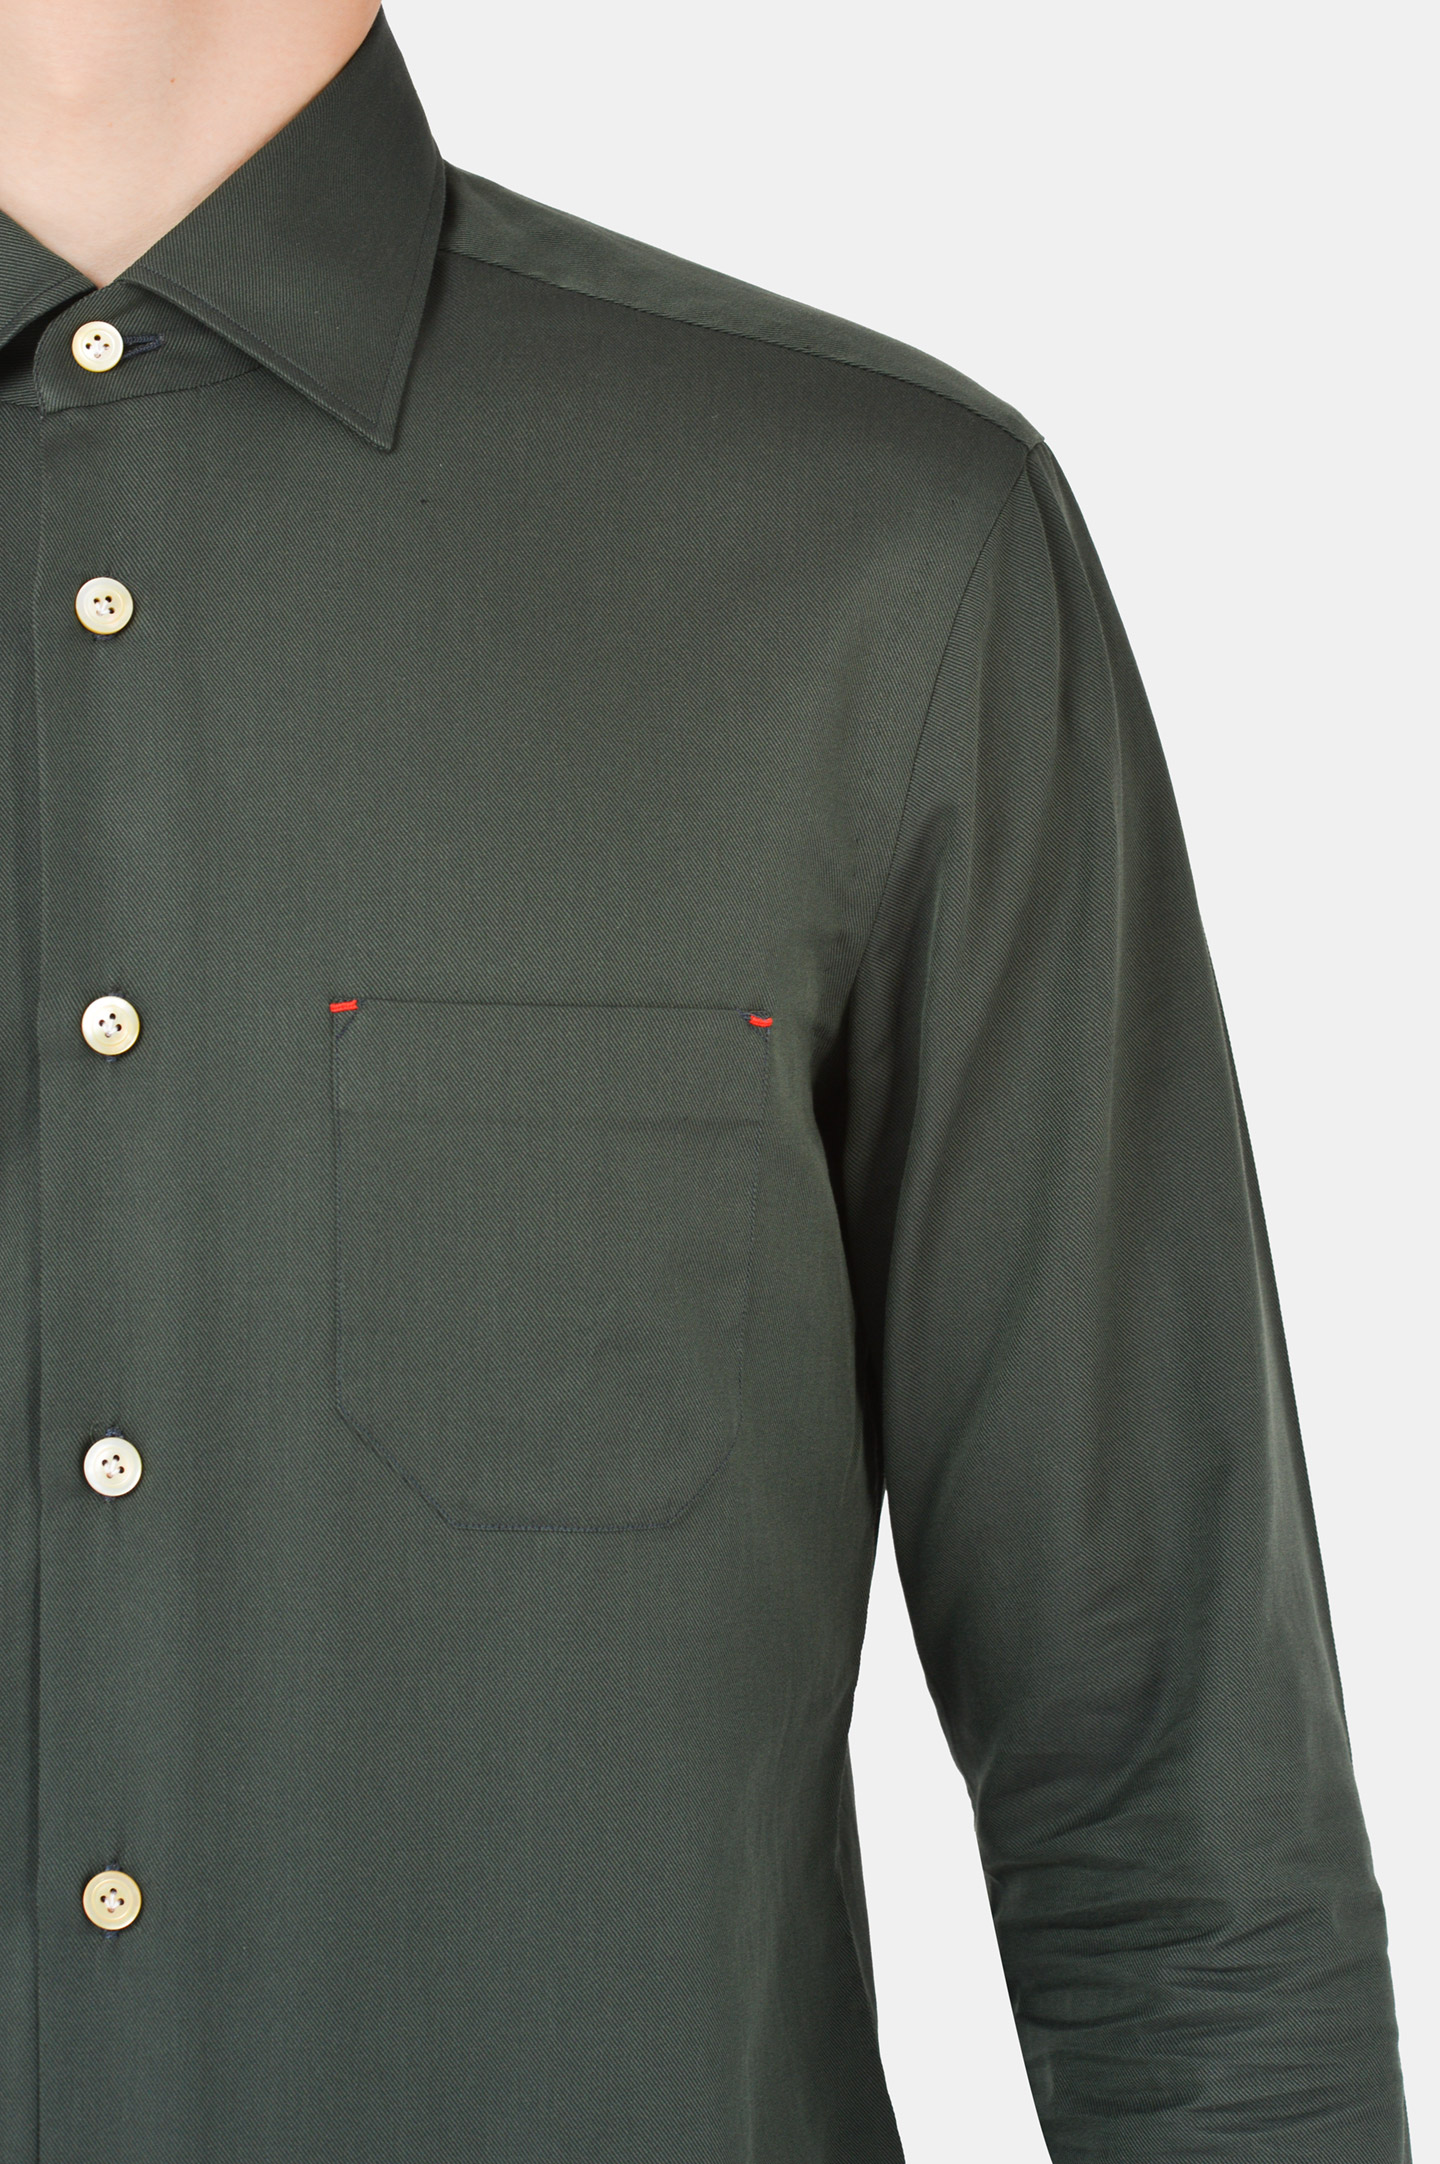 Рубашка KITON UMCNERH074090, цвет: Зеленый, Мужской